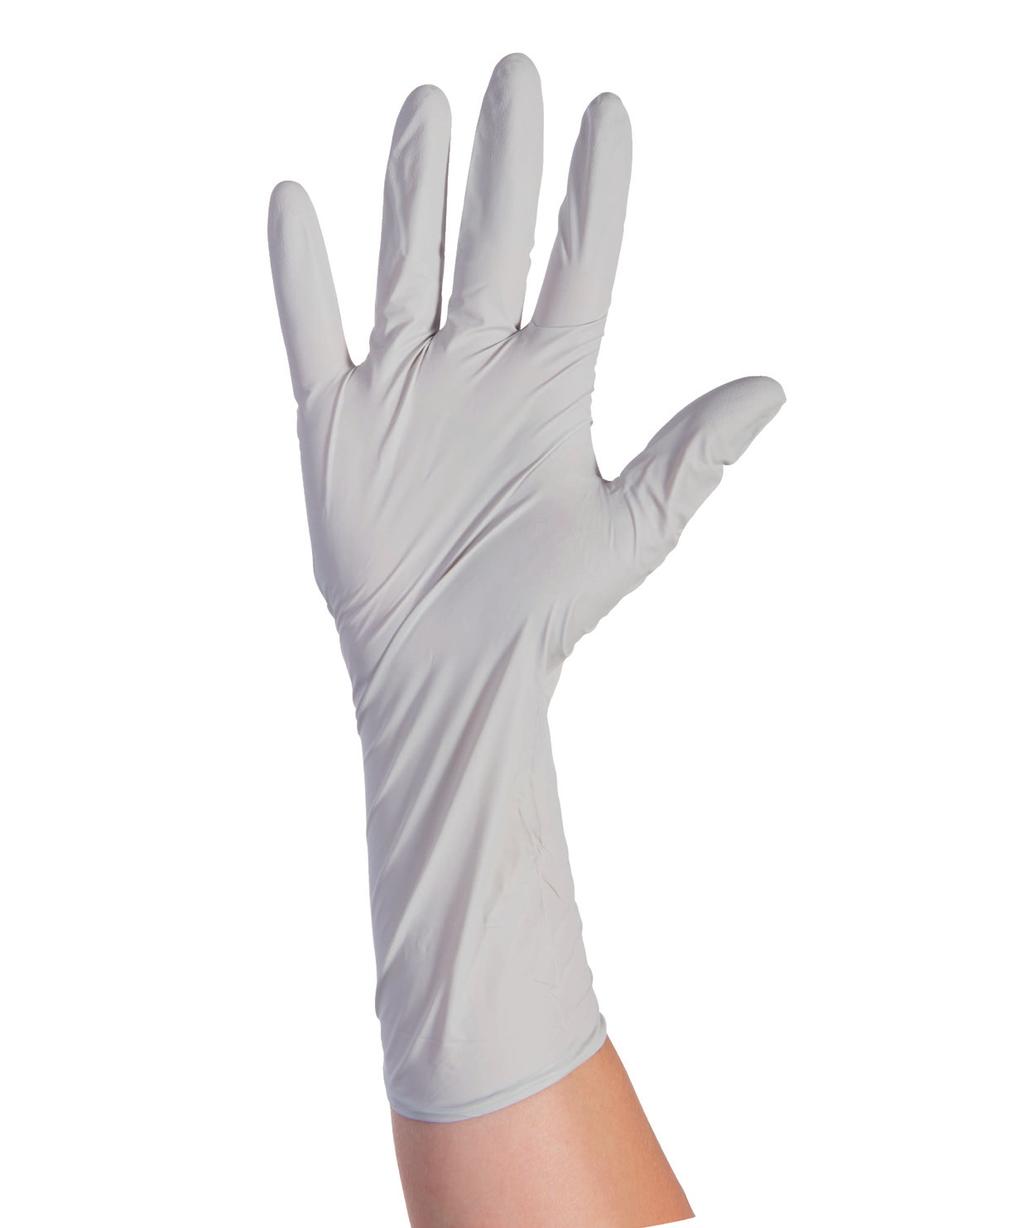 Xtra Bezprašné vyšetřovací rukavice prodloužené Pro střední a vyšší riziko infekce Využití pohotovost, záchranná služba ARO, JIP, urgentní příjem patologie, sterilizace AQL 1 kroucení, hrubé